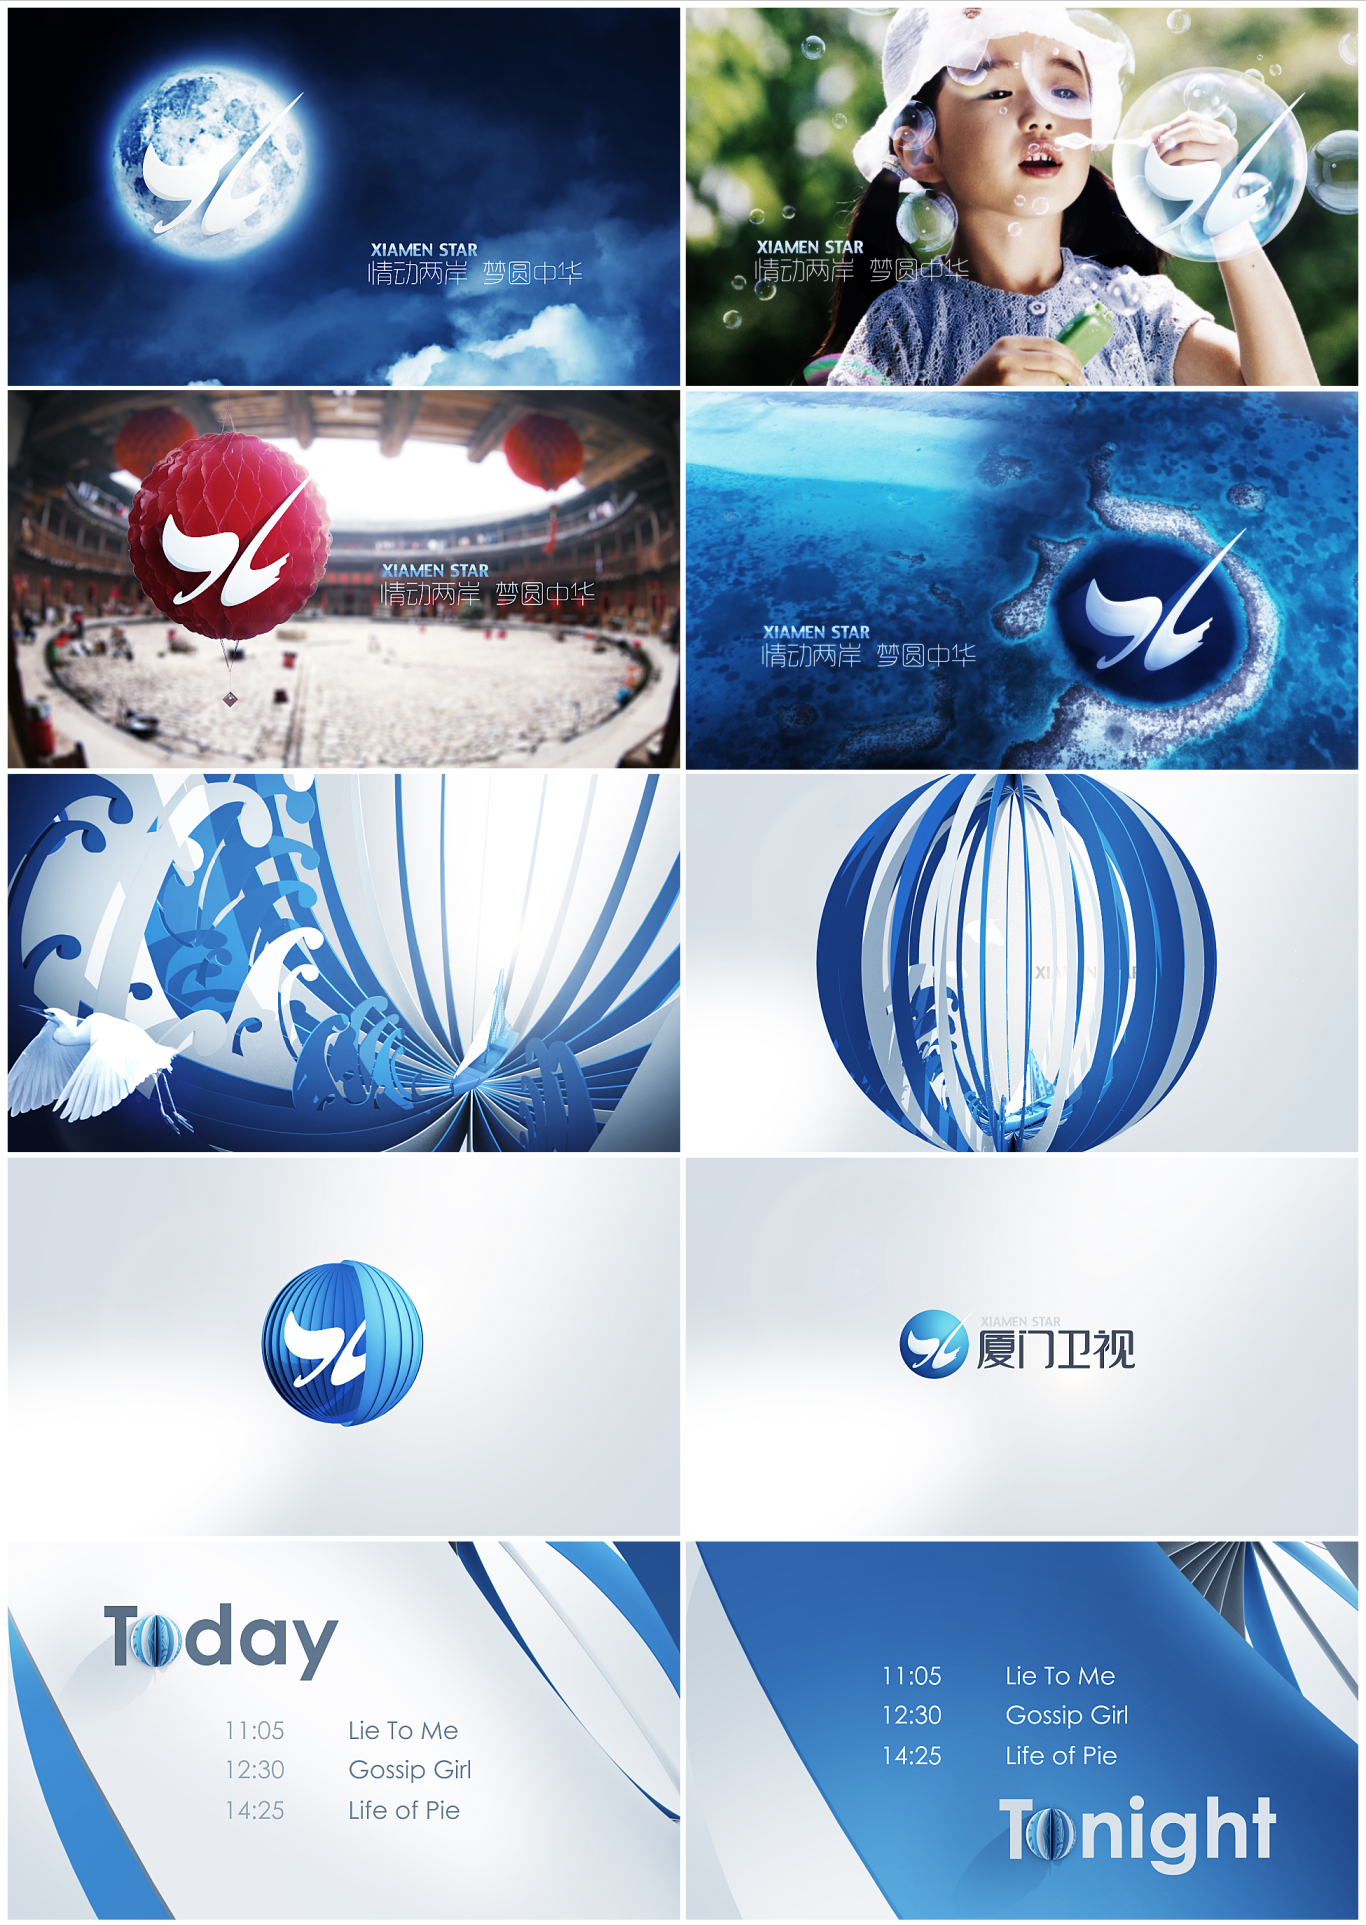 厦门卫视2015年频道品牌形象升级图7